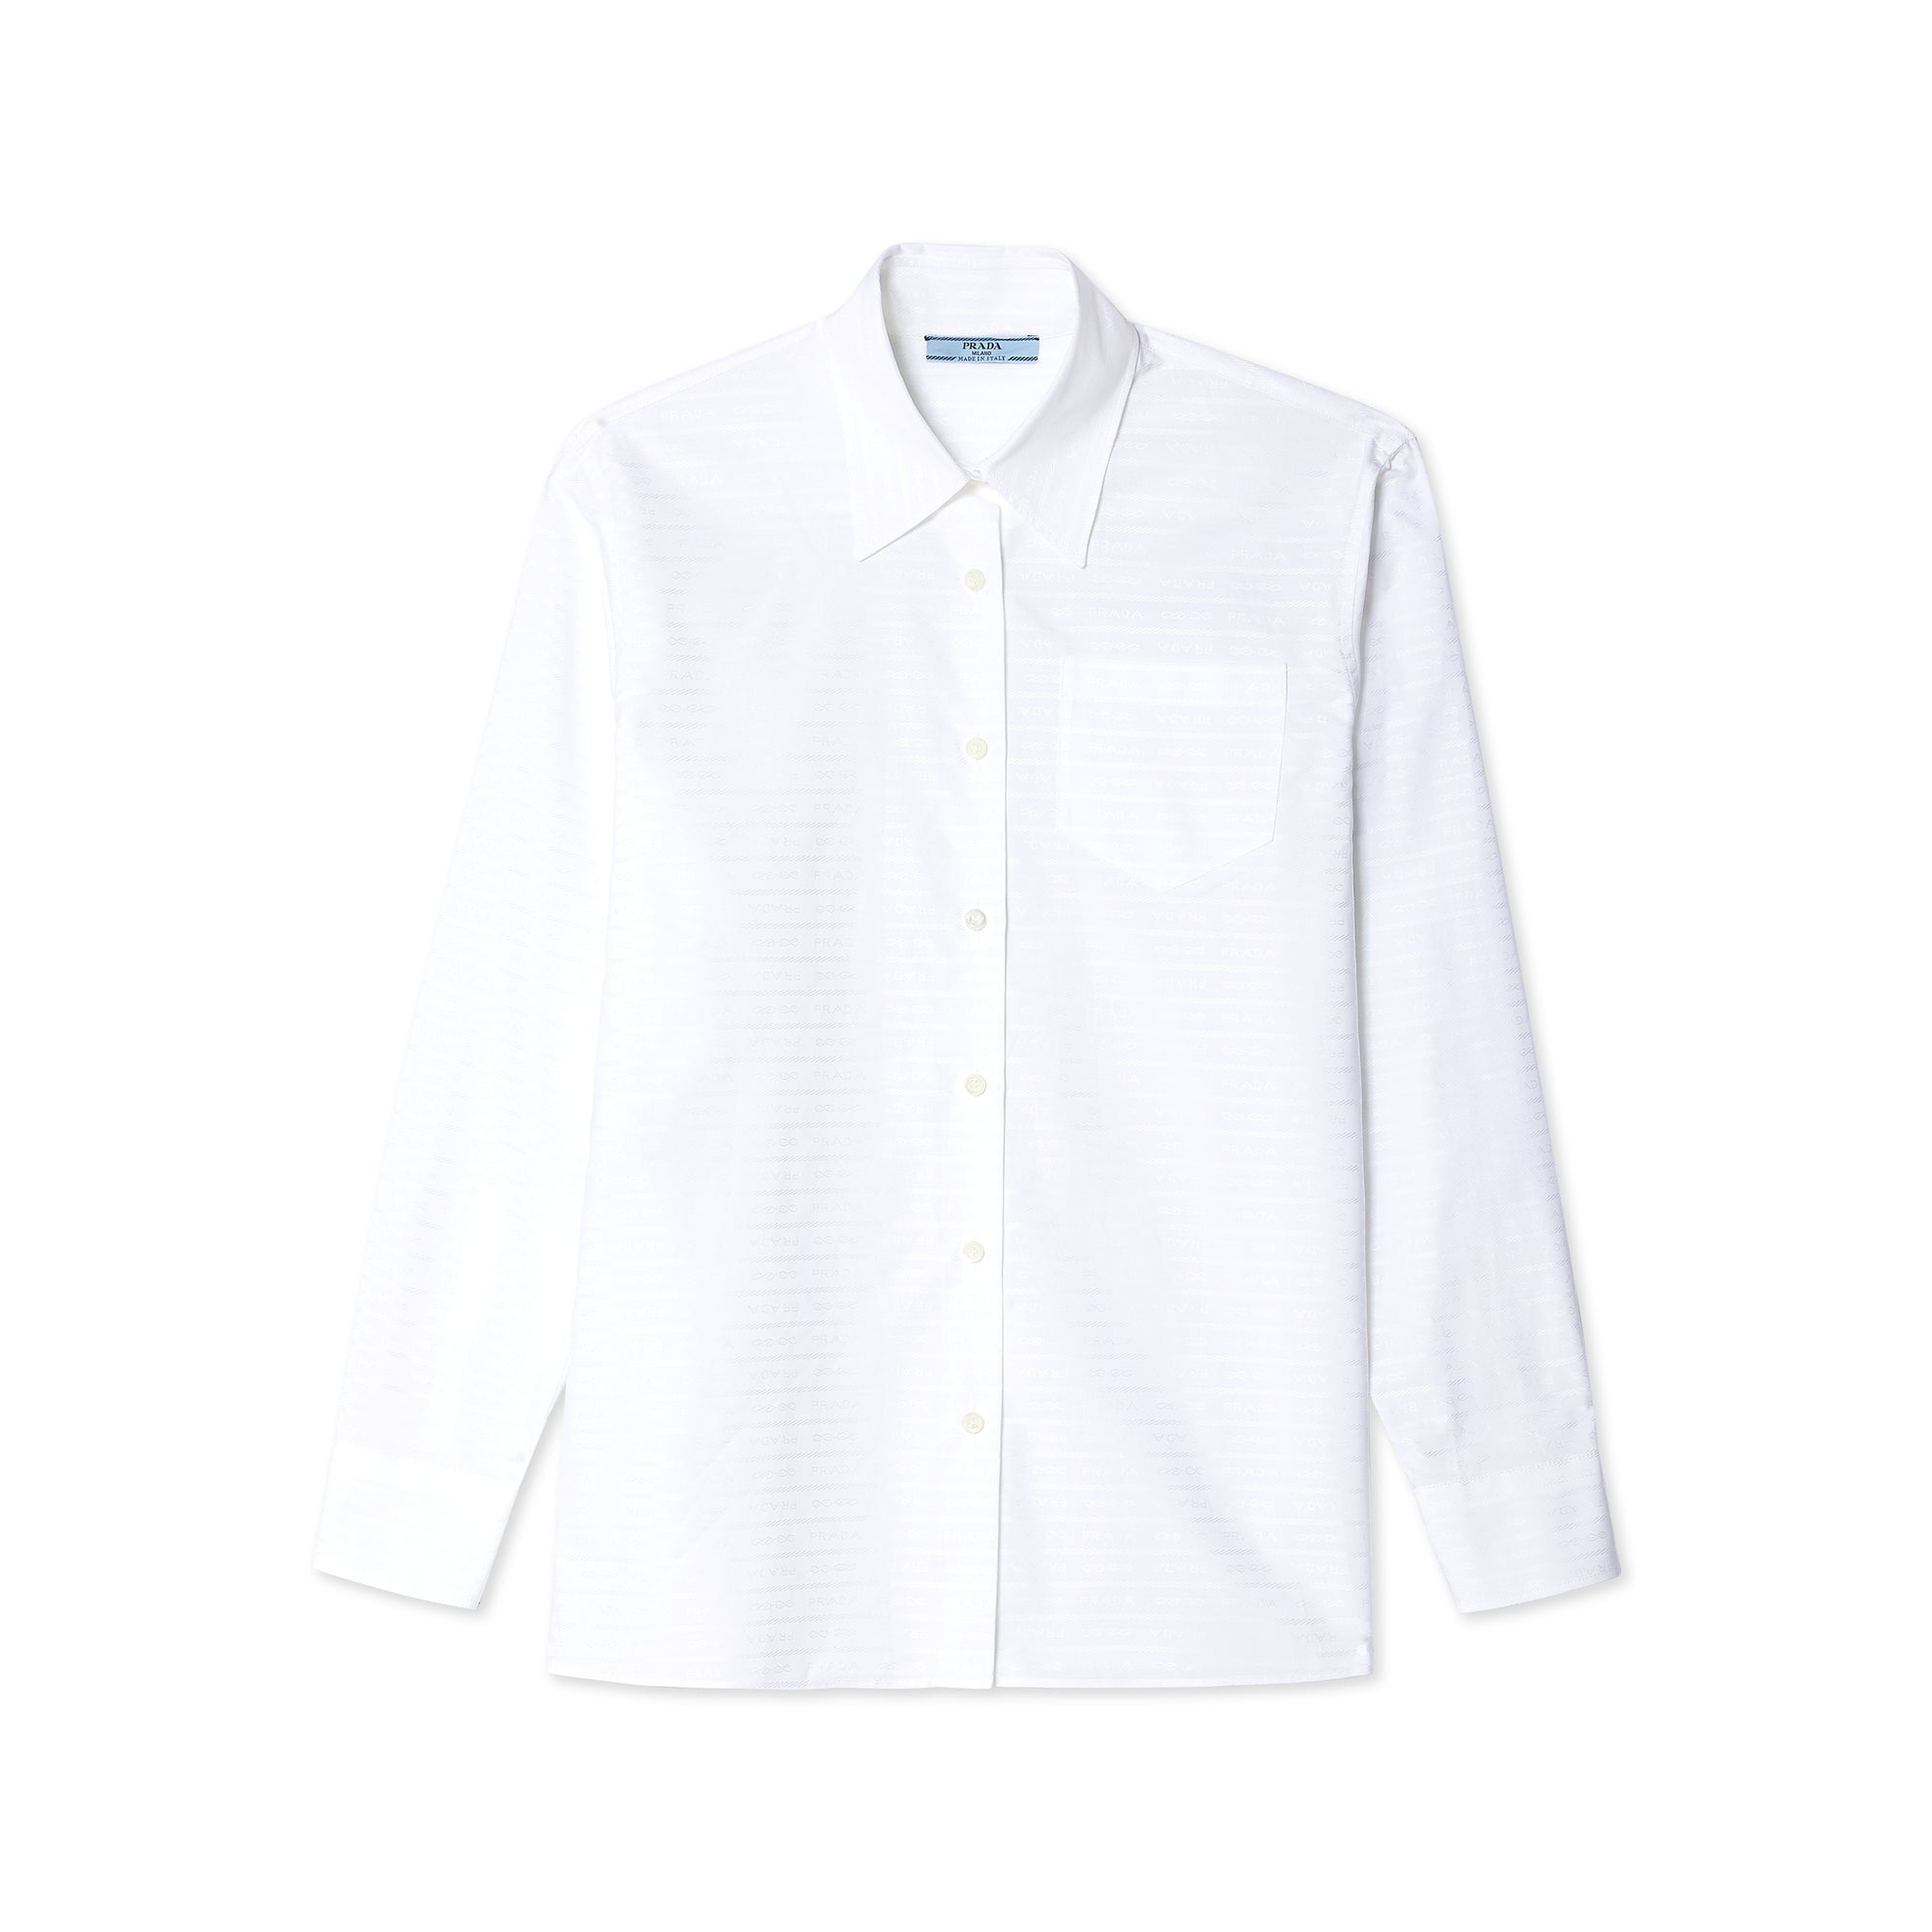 Prada - Women's Shirt - (White) view 1